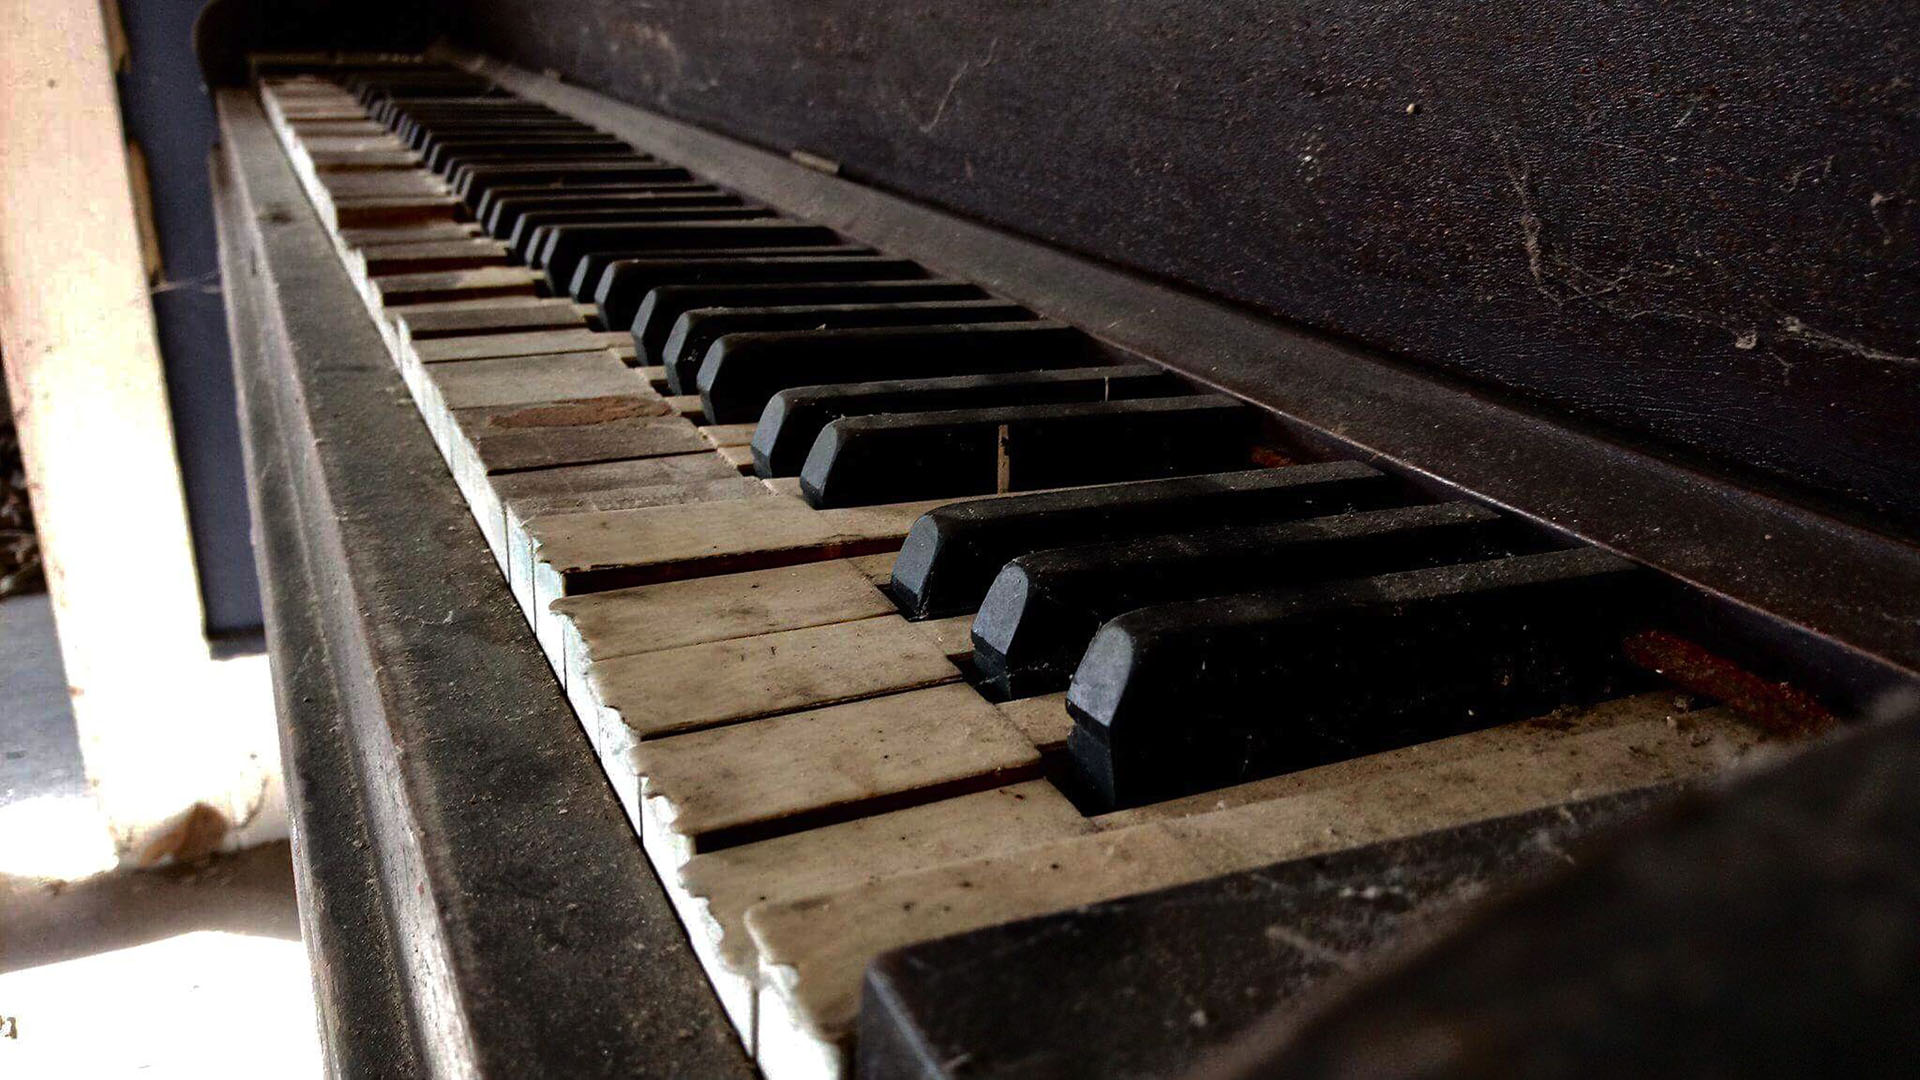 Spooky Piano